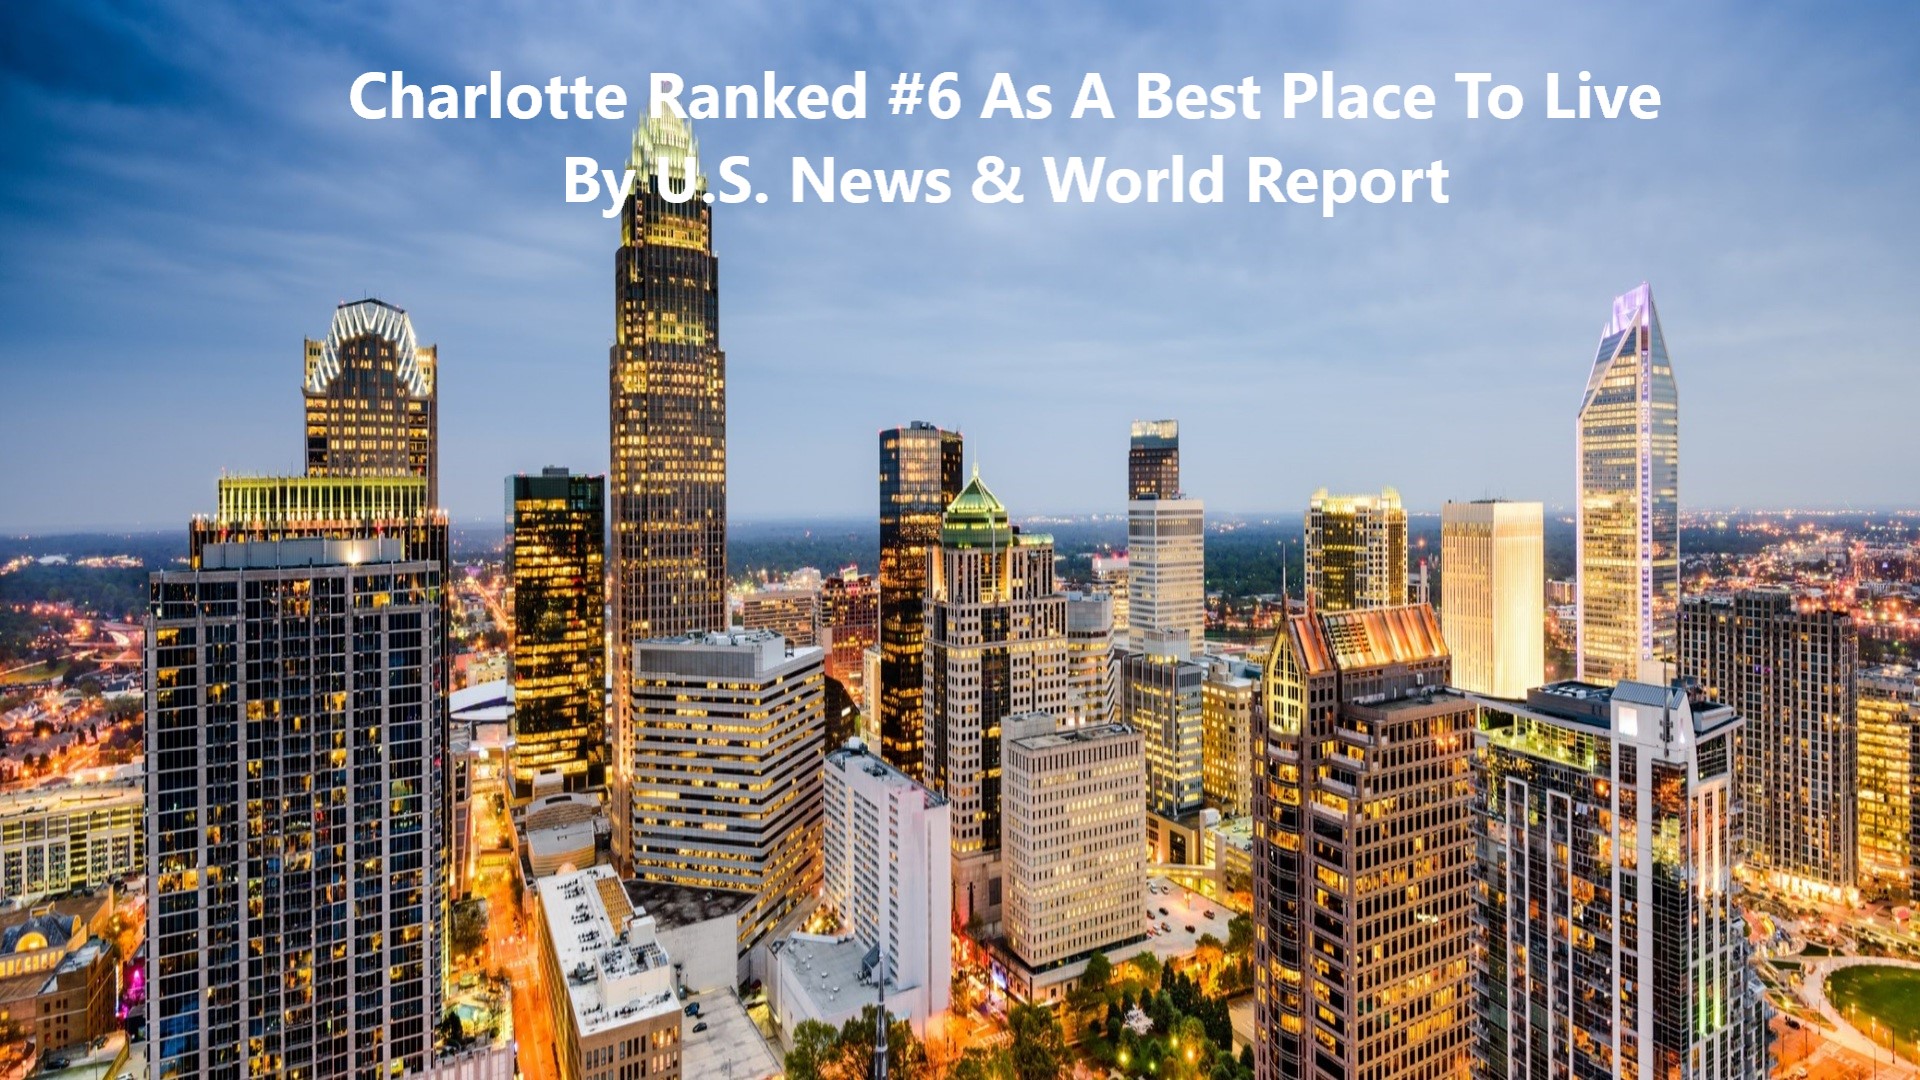 Chrlotte A Top 10 Best Place To Live City